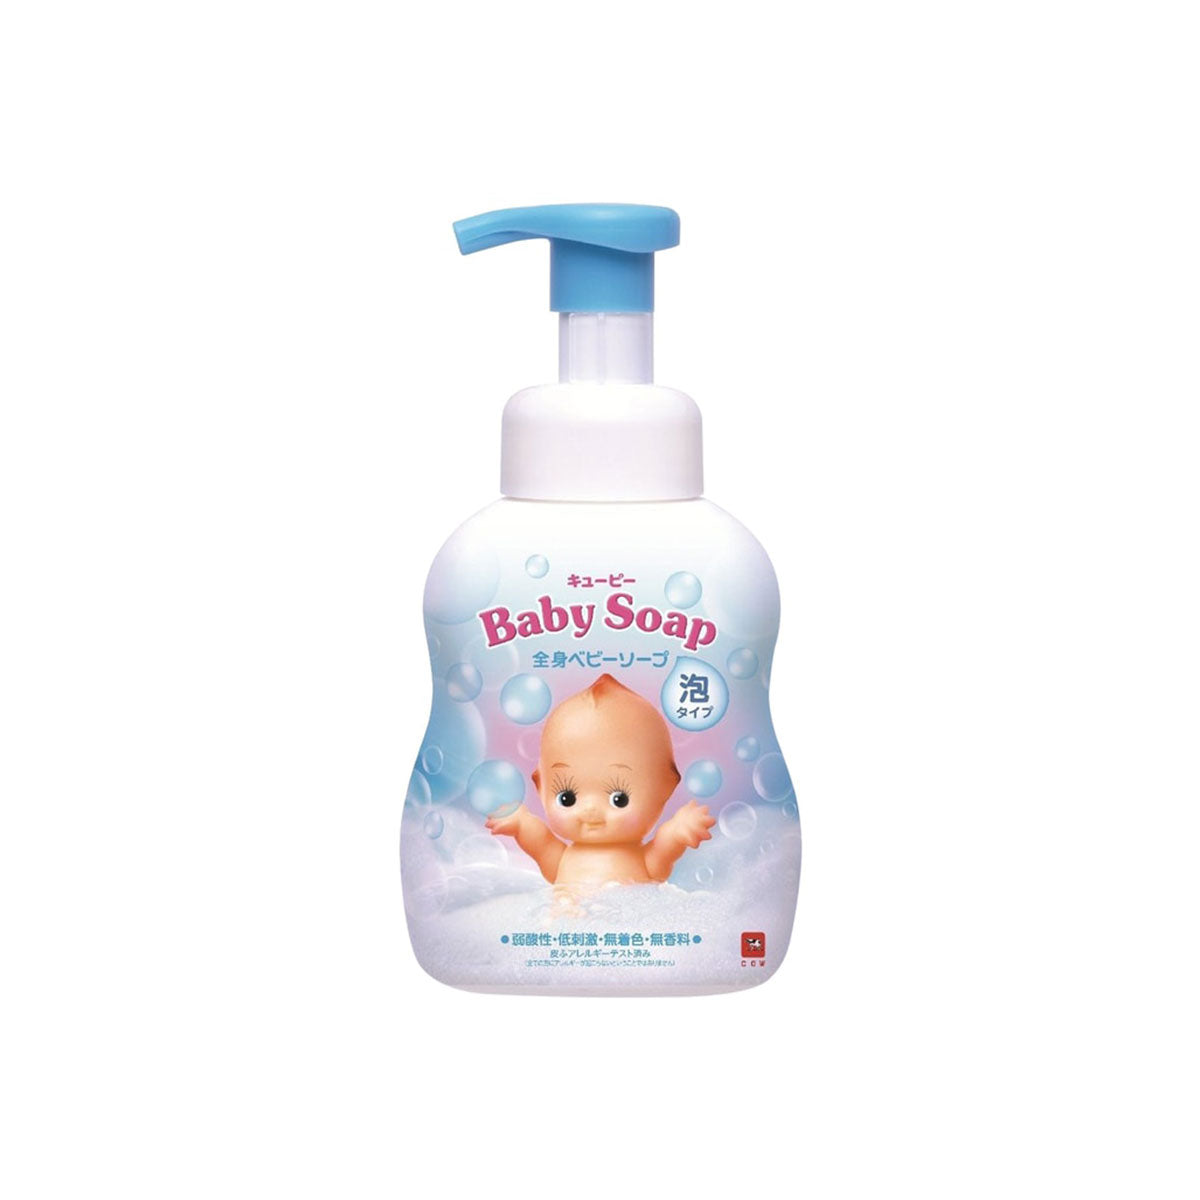 Baby Foaming Body Soap 400ml